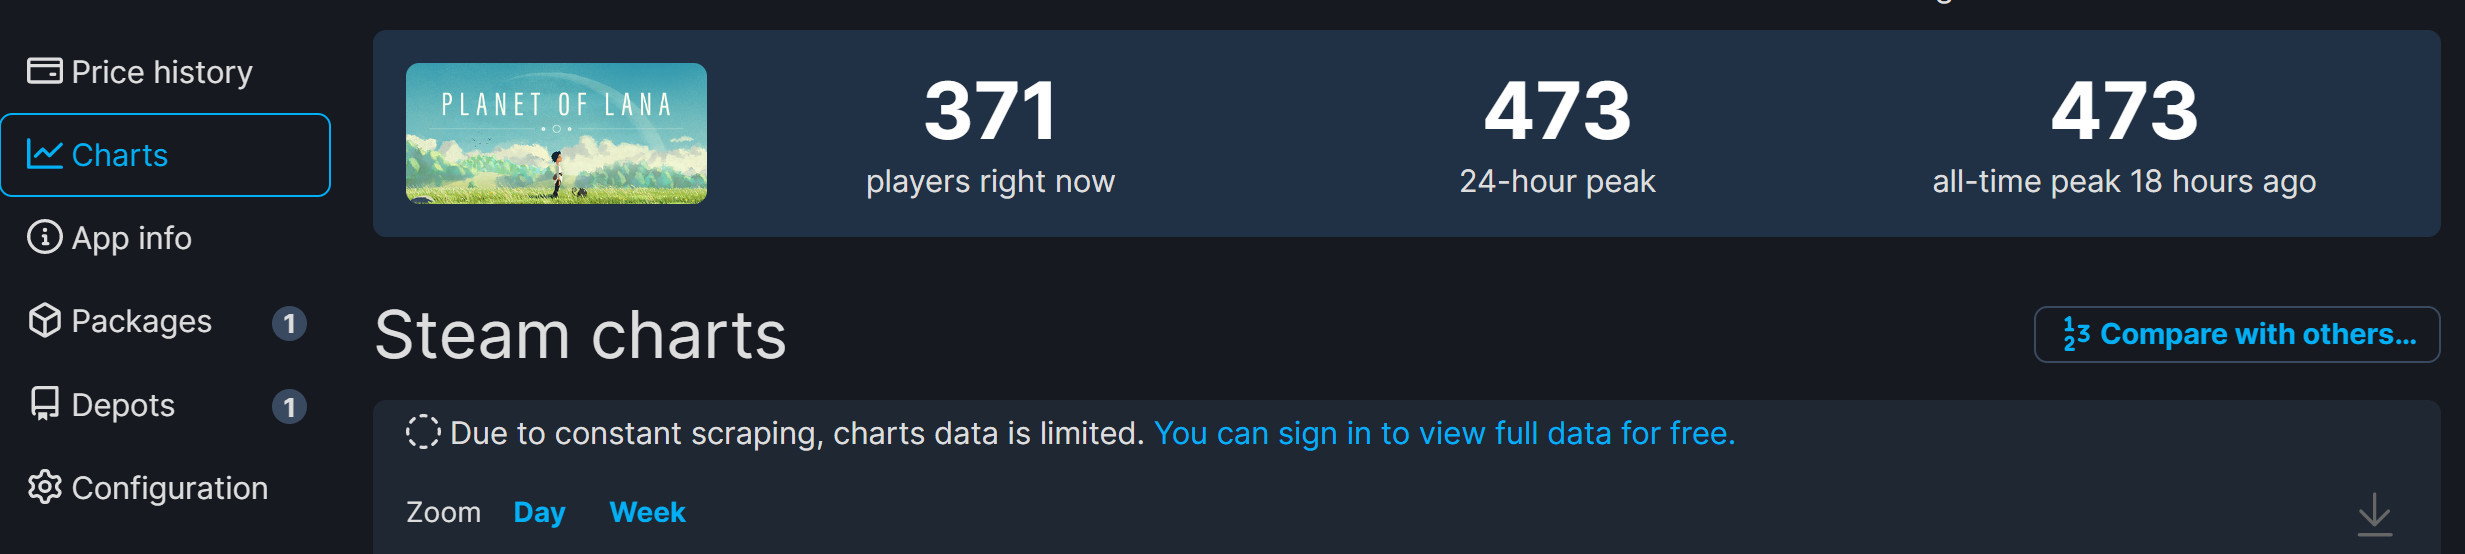 《拉娜的星球》Steam特別好評 但峰值僅473人-第1張